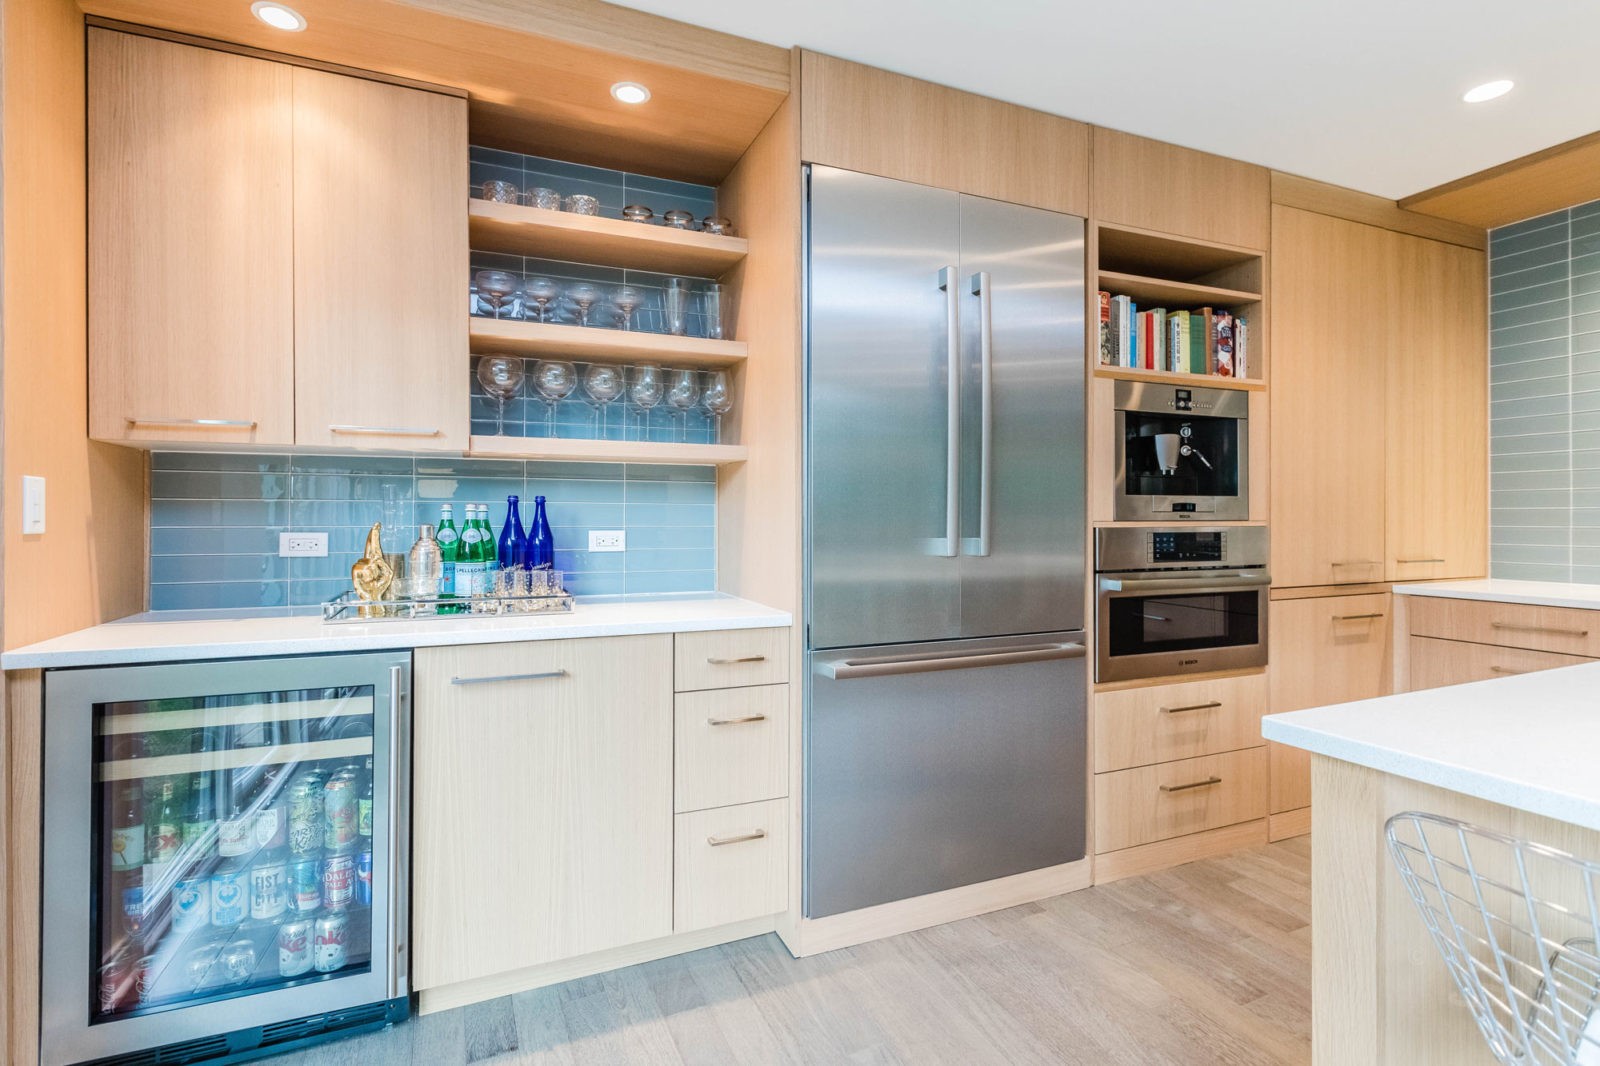 livco bright kitchen remodel bar fridge butler's pantry light cabinets stainless steel fridge